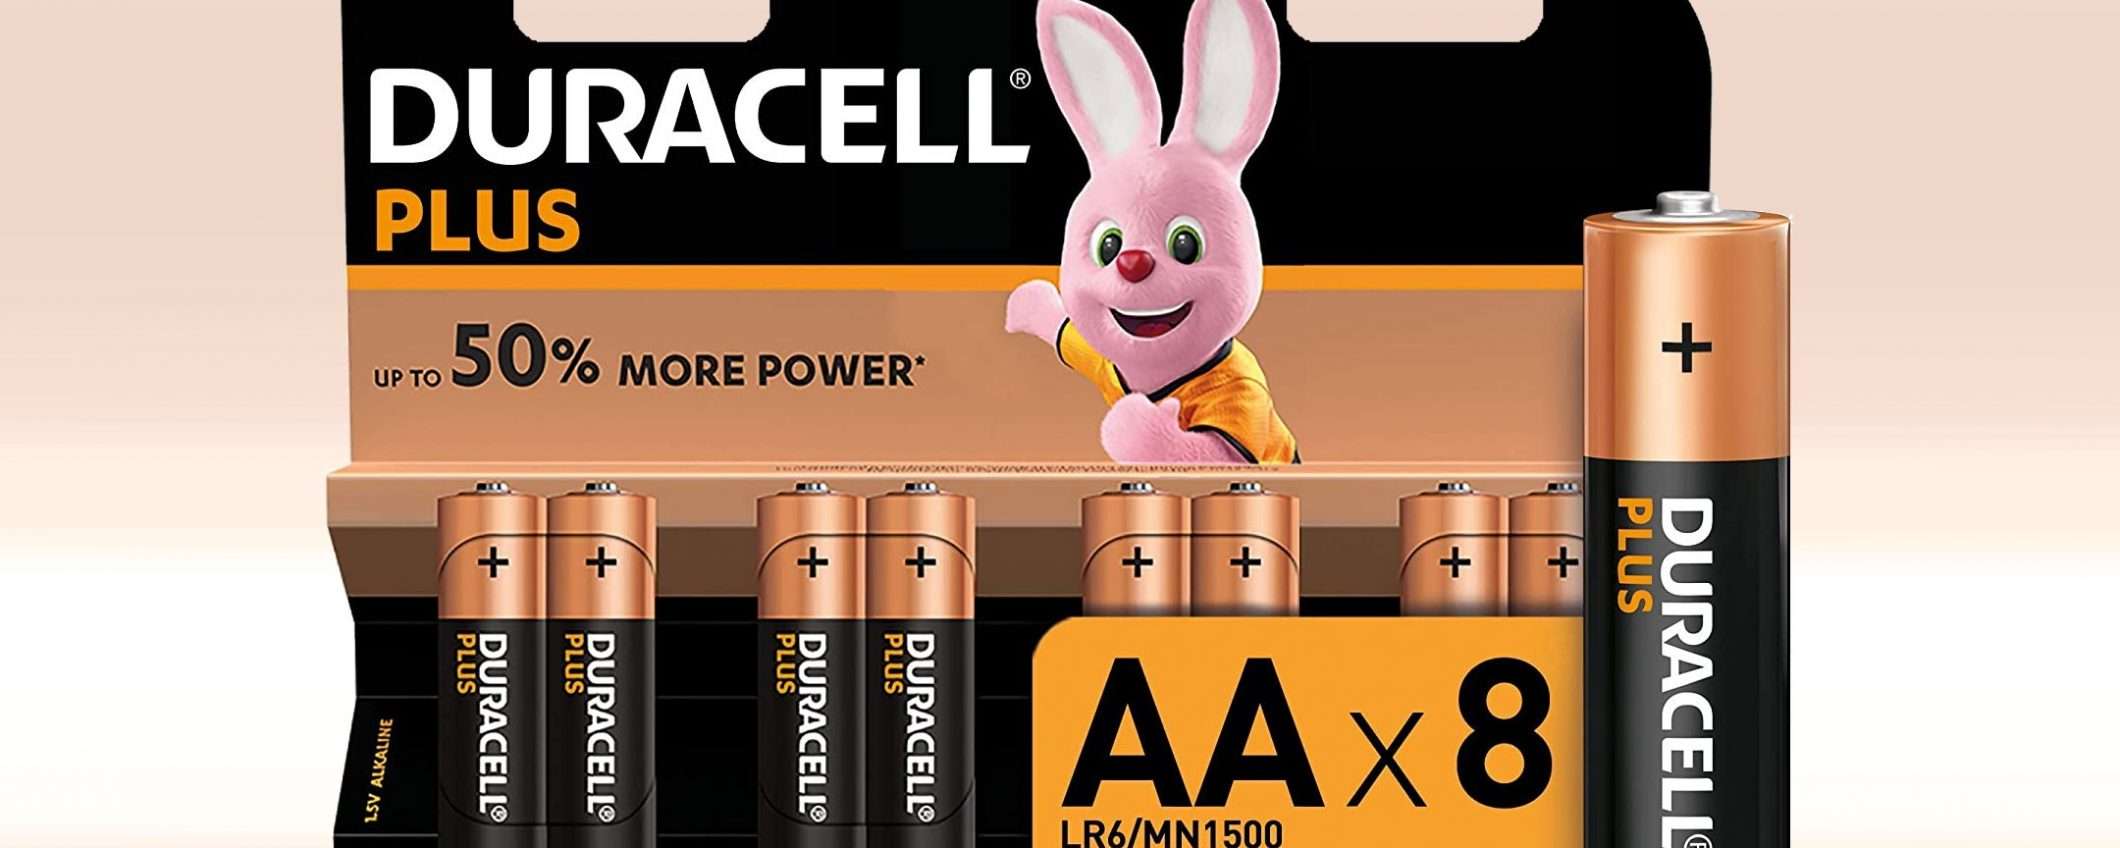 Otto batterie Duracell per 0,49€ in tutto: OGGI si può